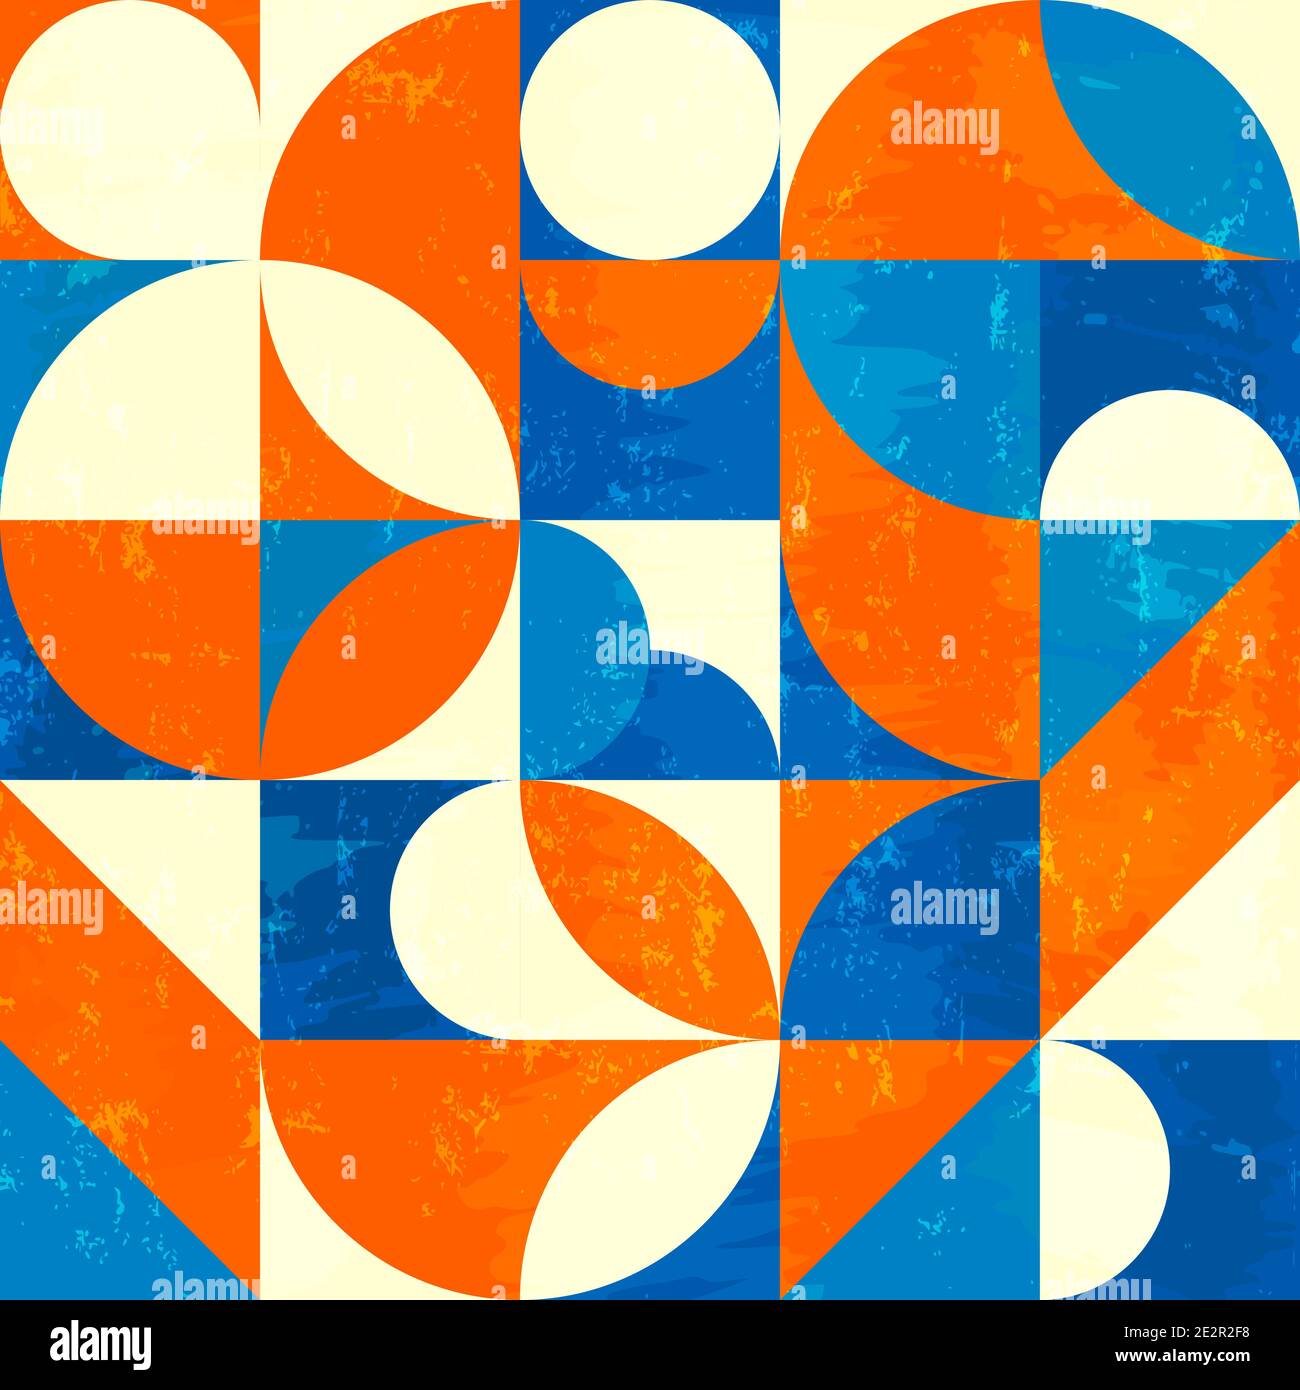 motif de fond géométrique abstrait, style rétro/vintage, avec cercles, carrés, touches de peinture et touches Illustration de Vecteur